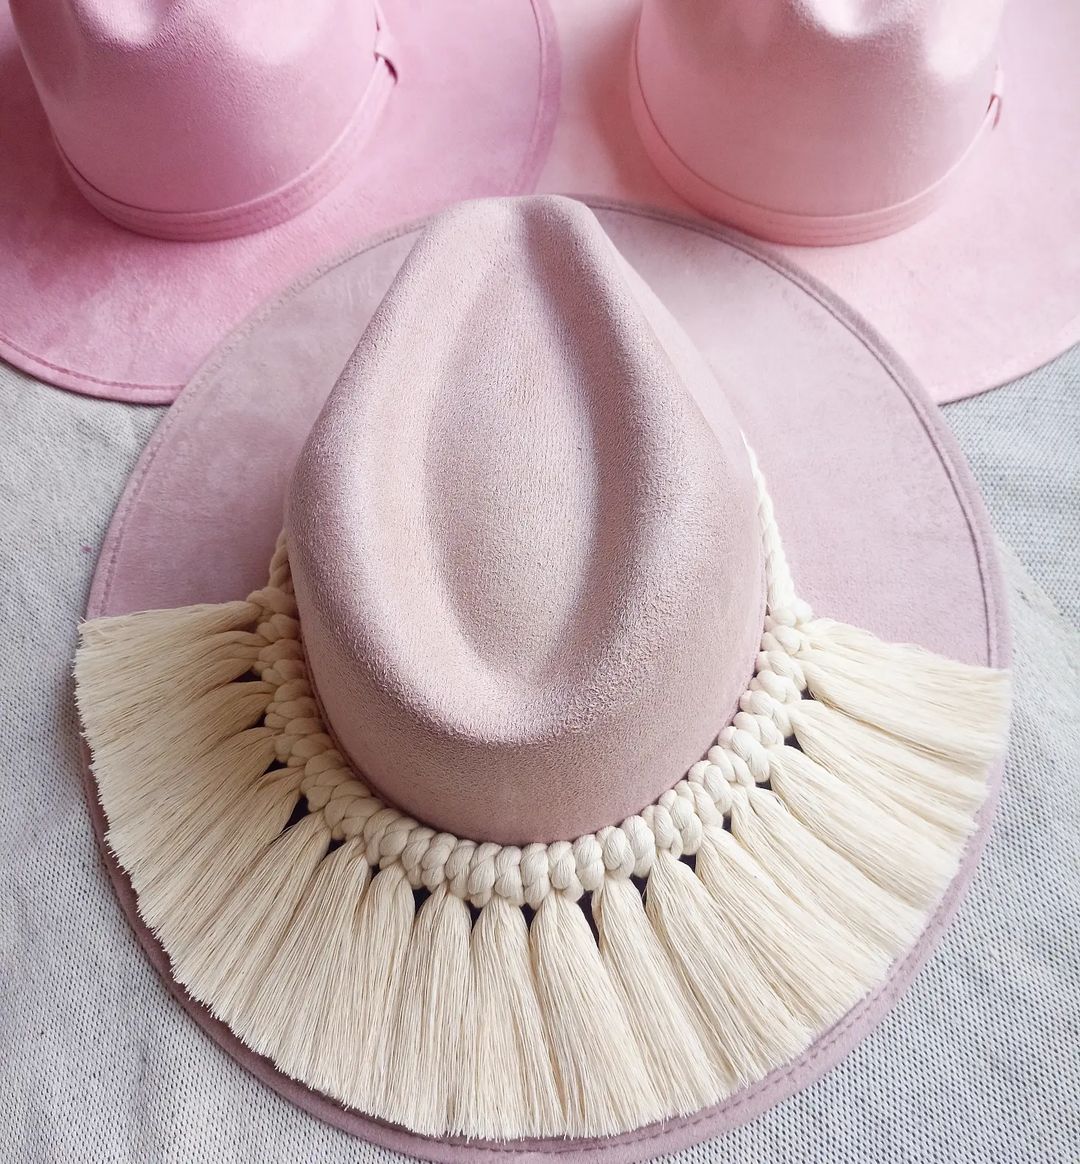 Sombrero de gamuza ala plana color rosa nude macramé con cordón de algodón crudo.